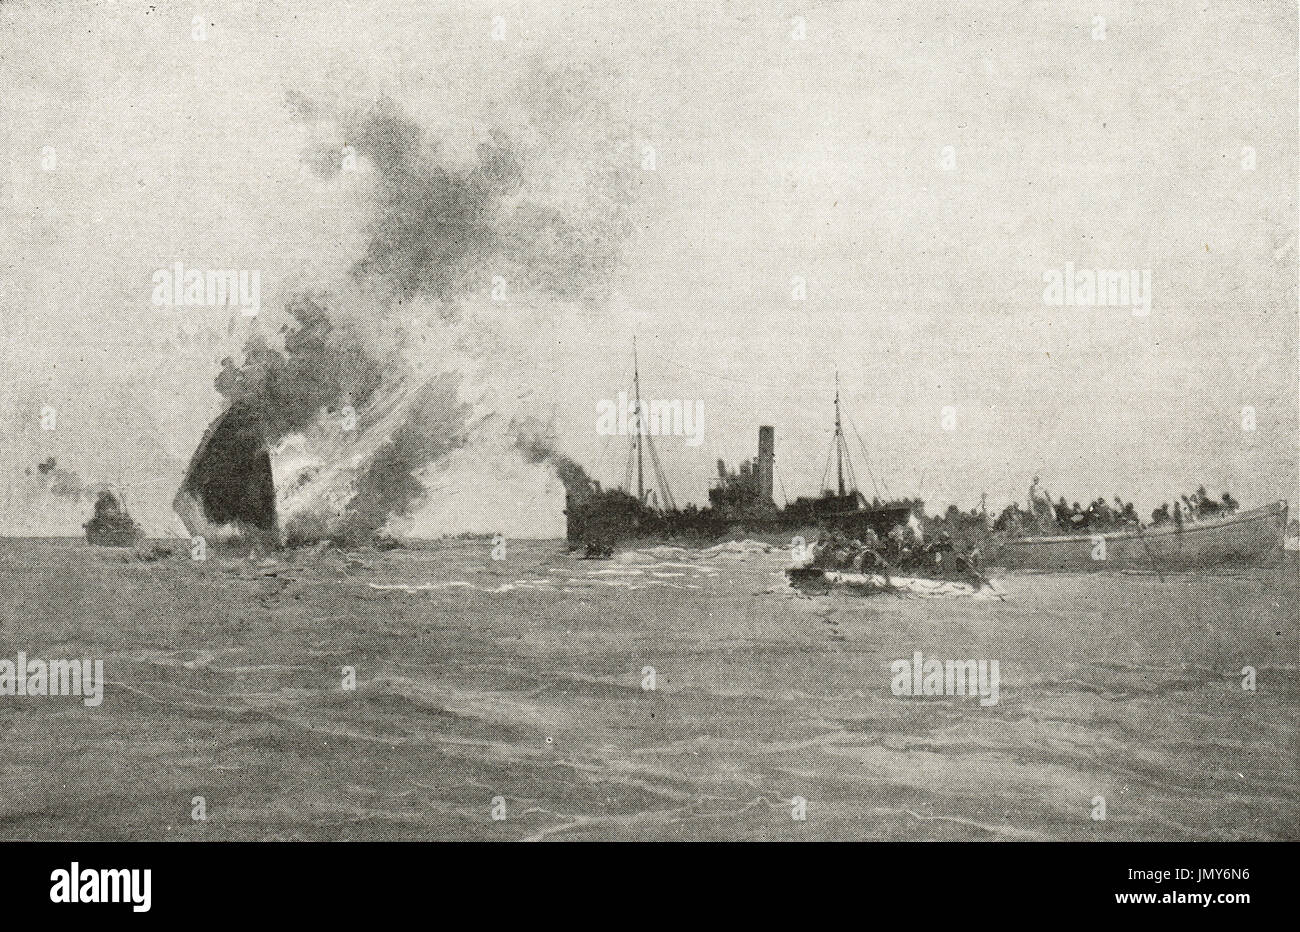 HMT Aragon sinken, 30. Dezember 1917 Stockfoto